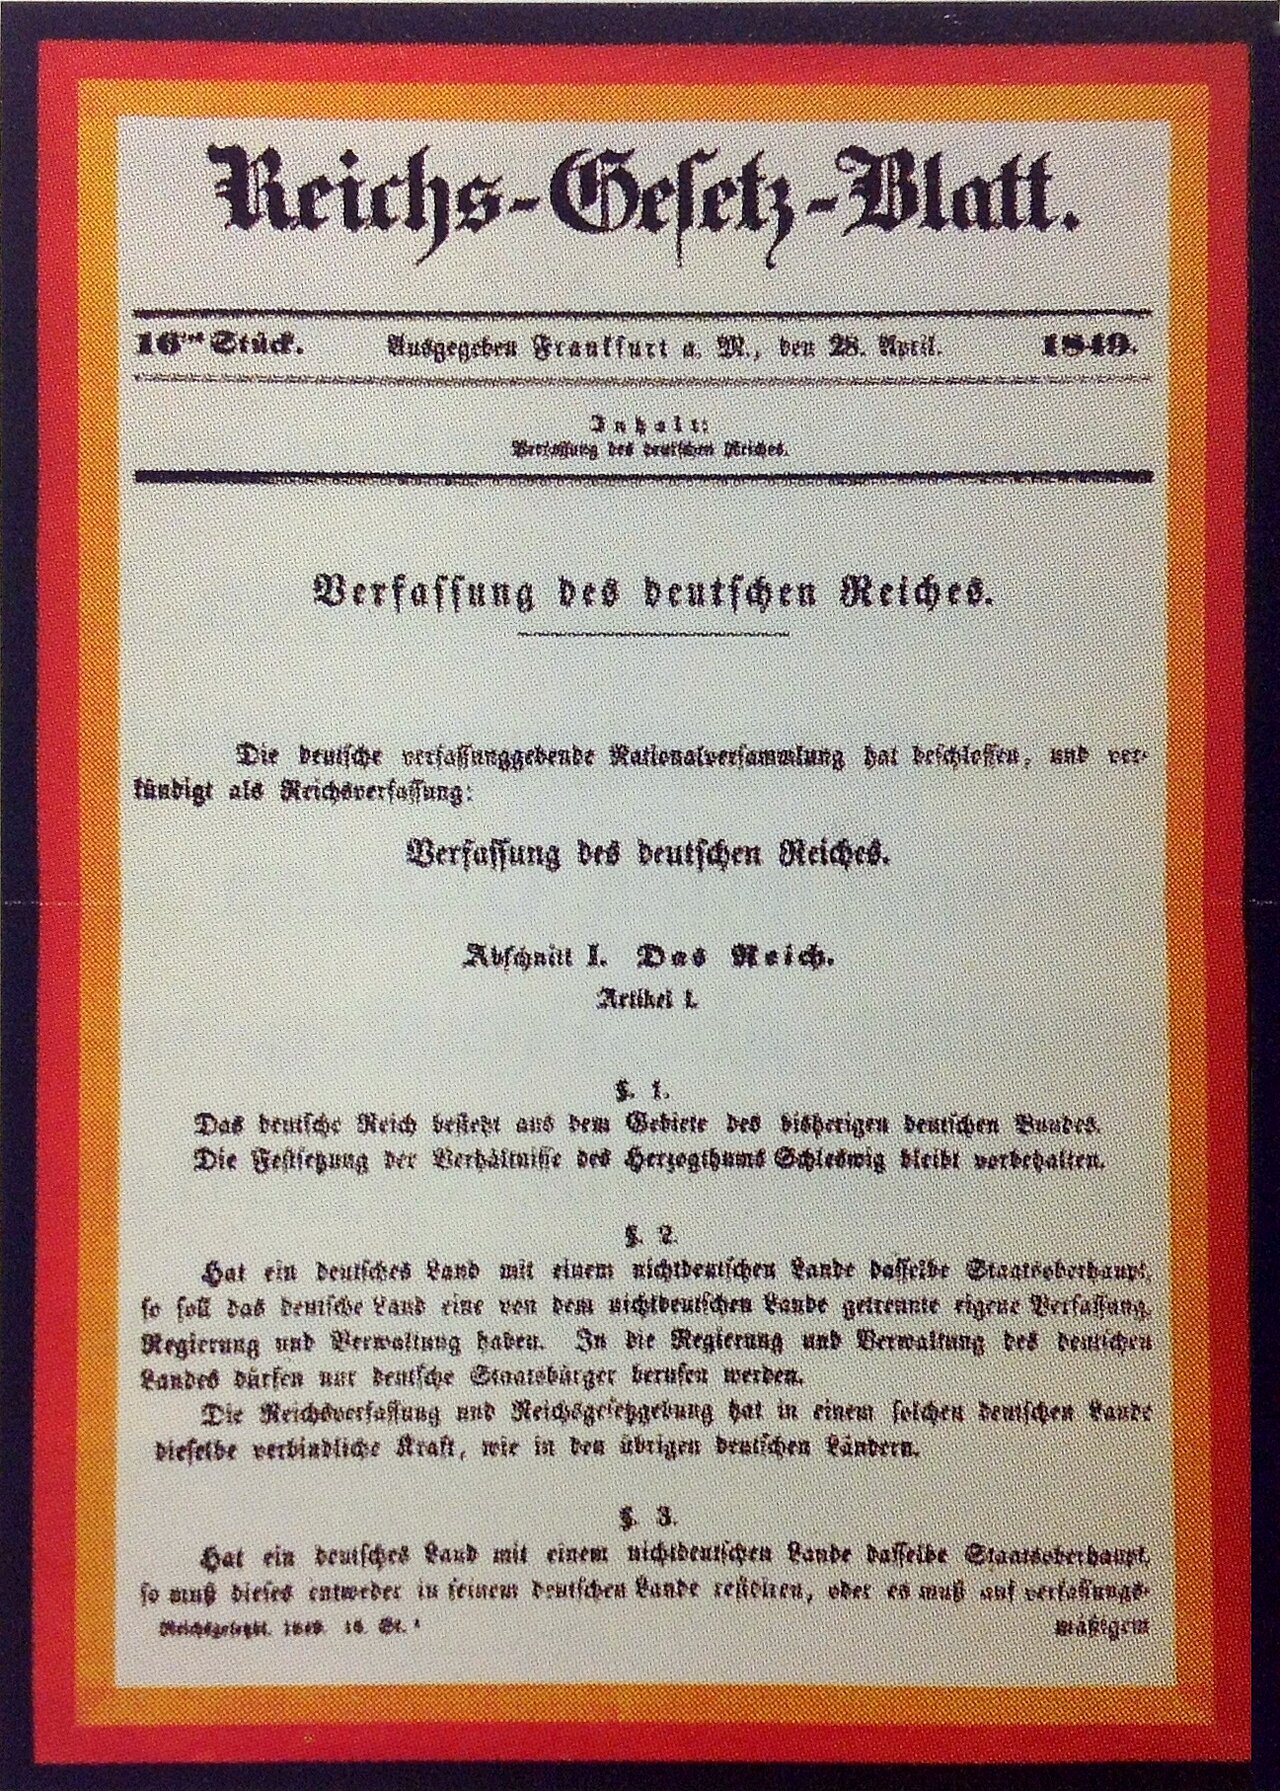 Farbfoto: Dokument mit schwarz-rot-goldenem Rand und altdeutschem Text.